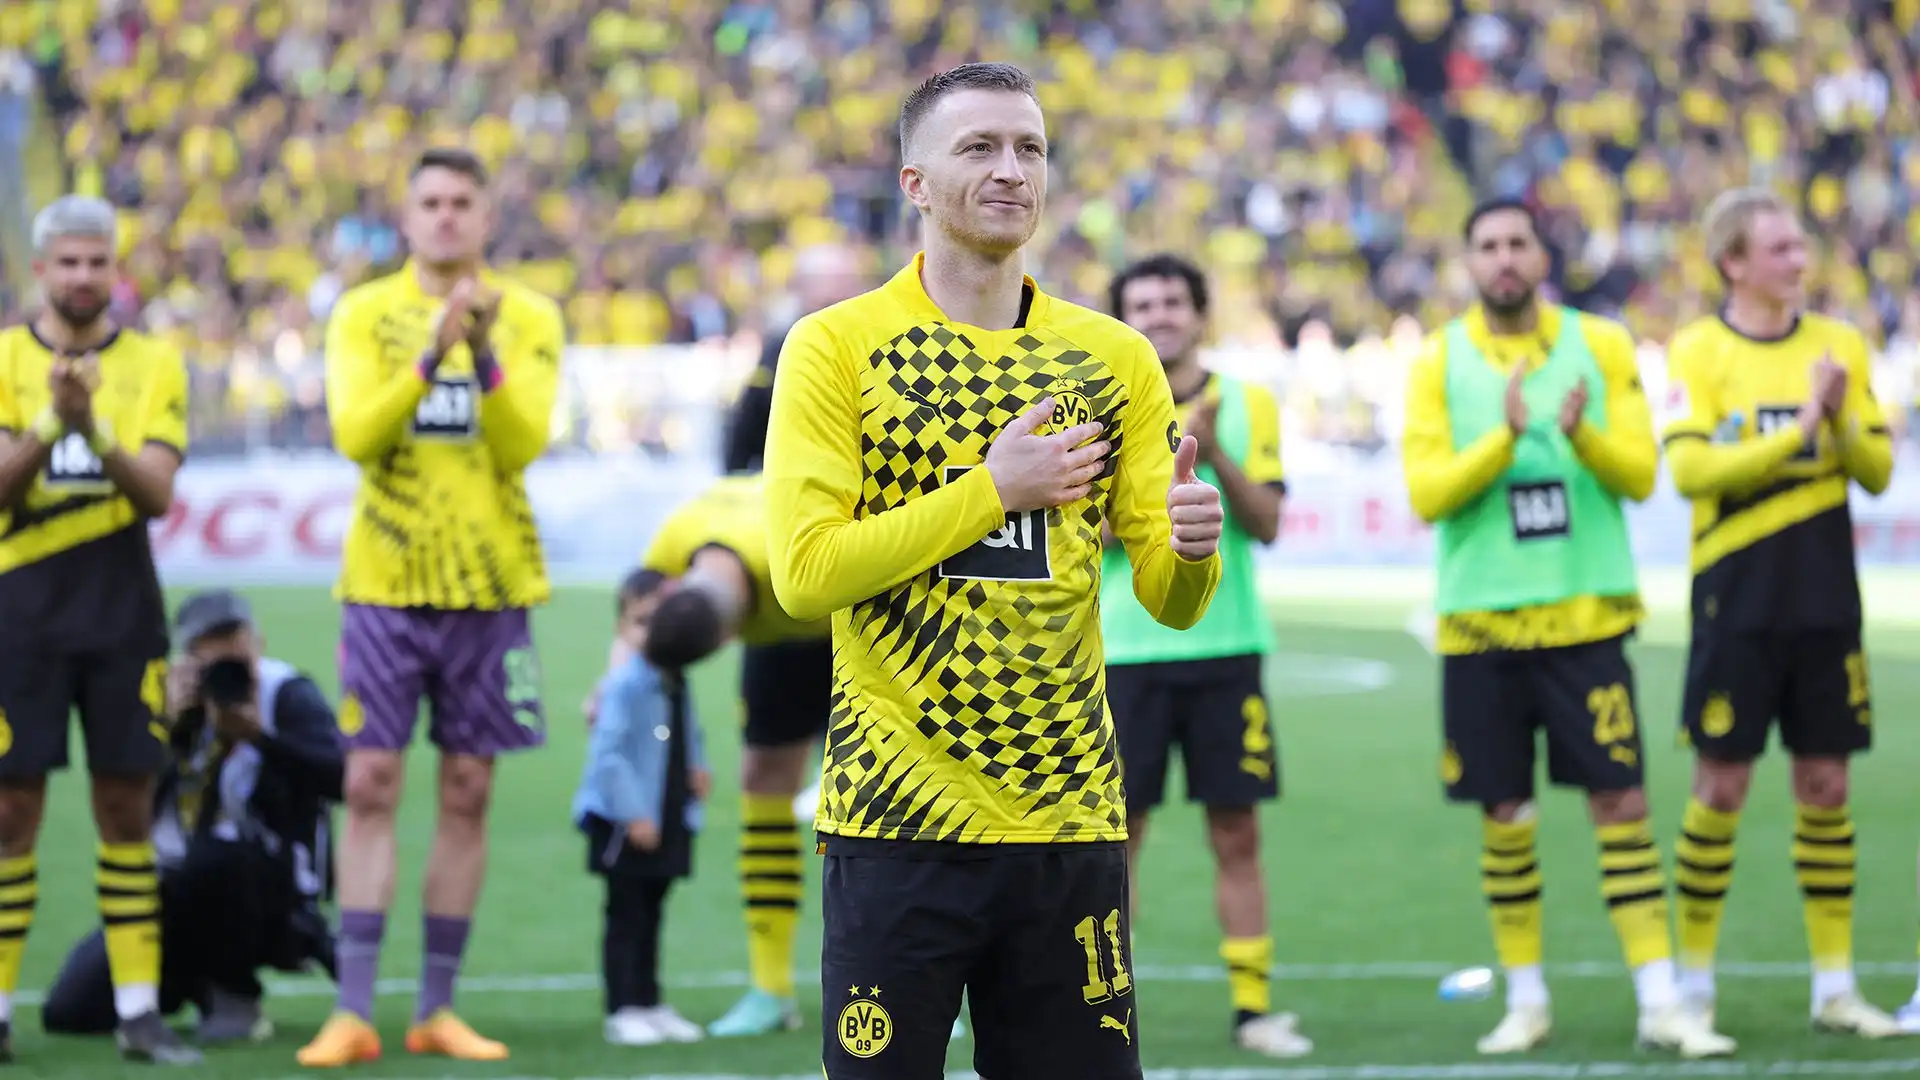 Dopo l'addio al Borussia Dortmund, il calciatore dovrà scegliere la sua prossima squadra